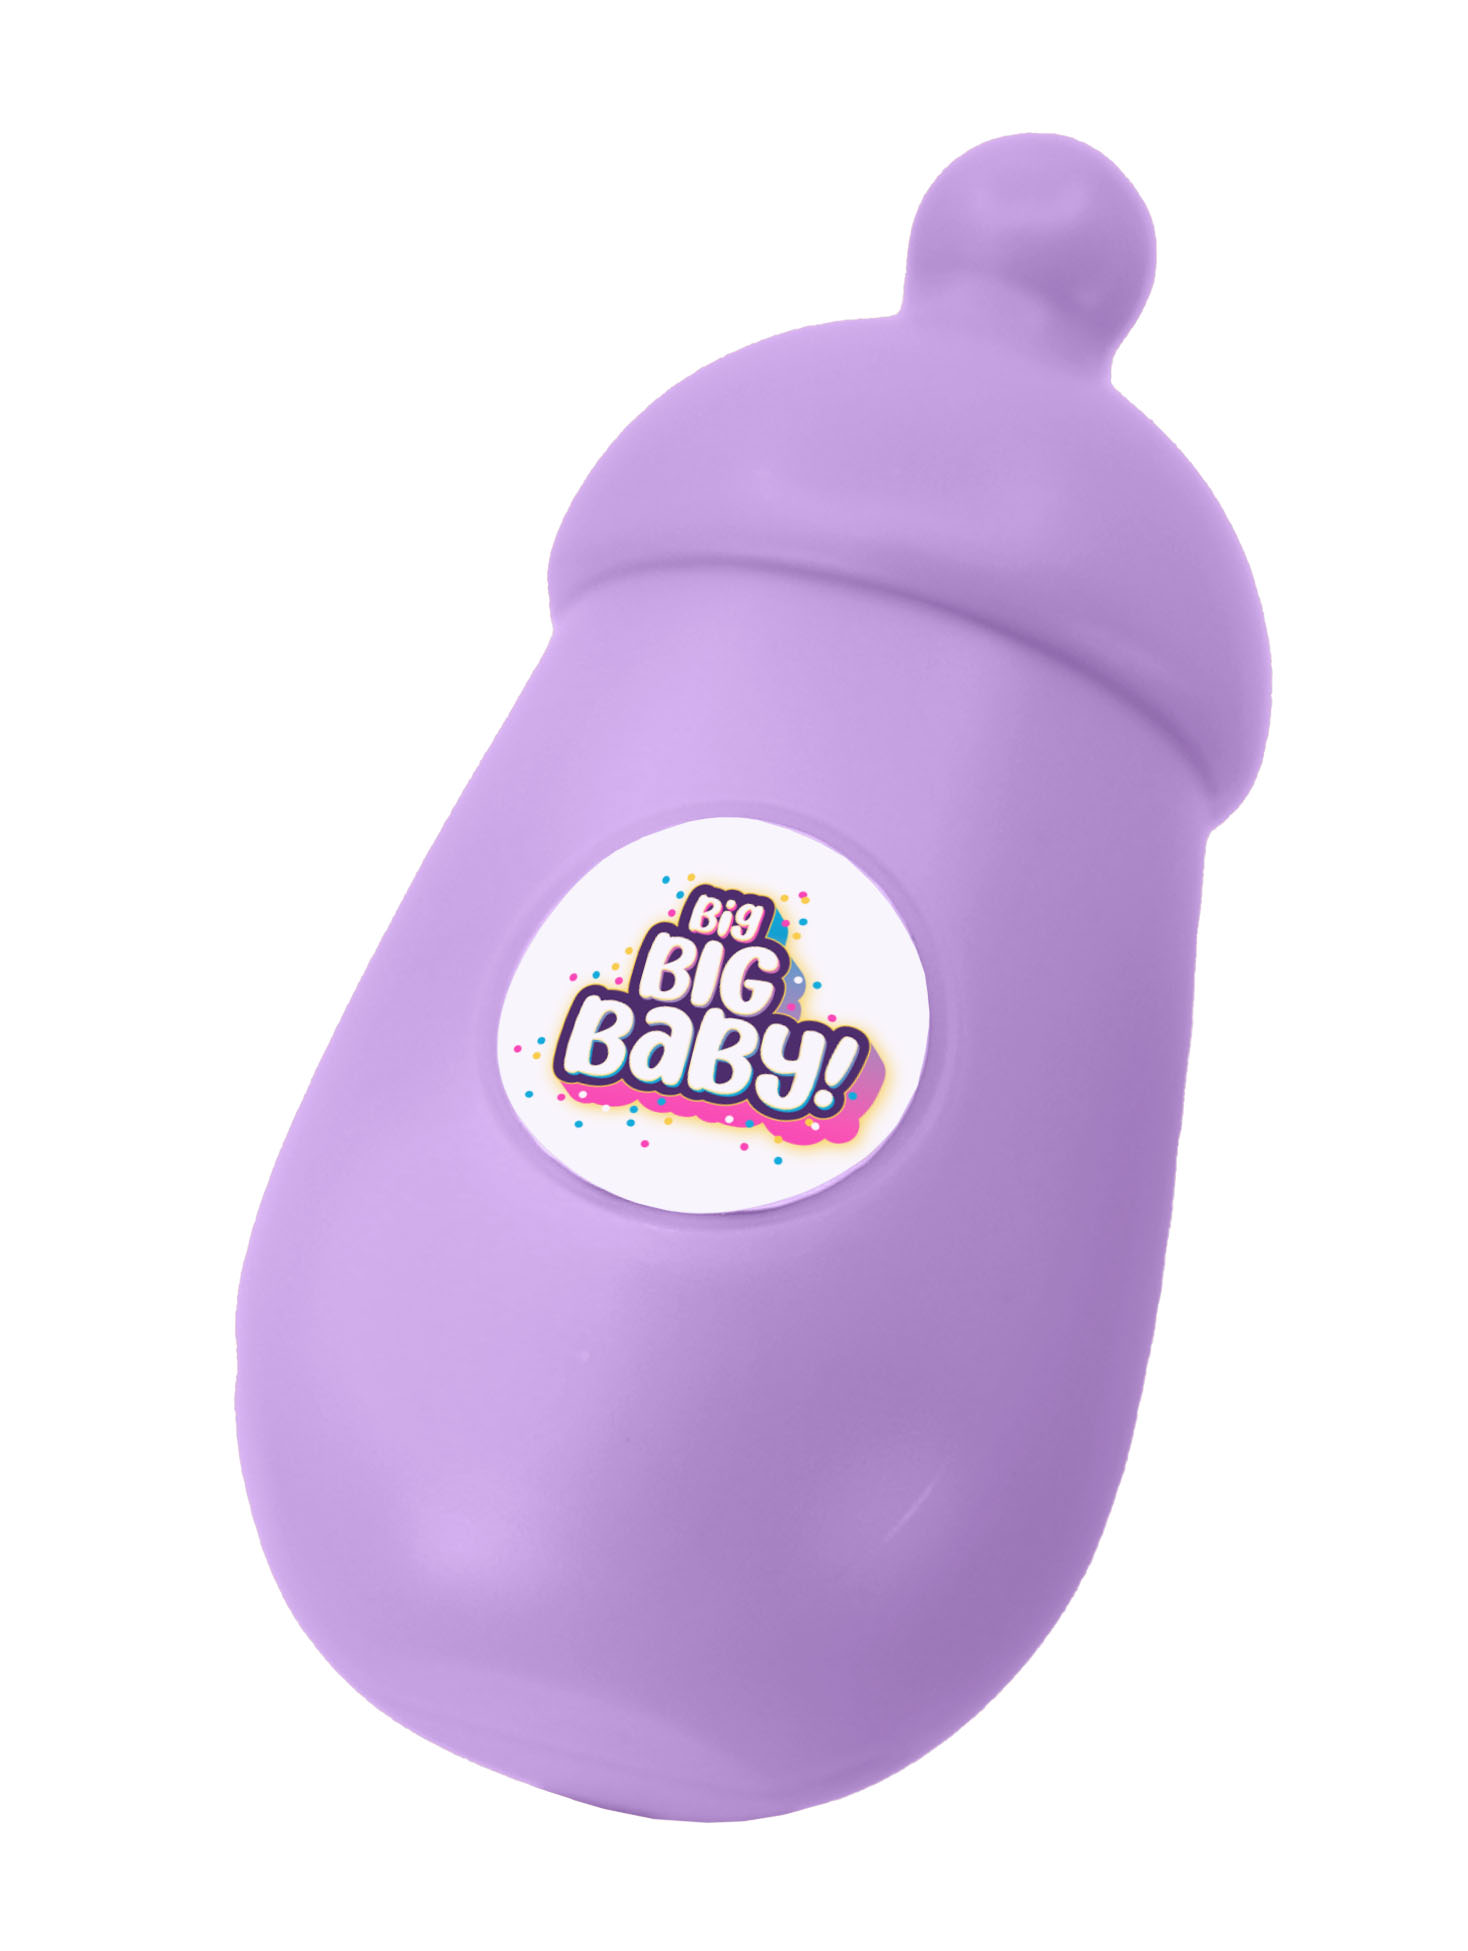 Игрушка сюрприз BIG BIG BABY Мягконабивная интерактивная кукла в шаре с аксессуарами - фото 18